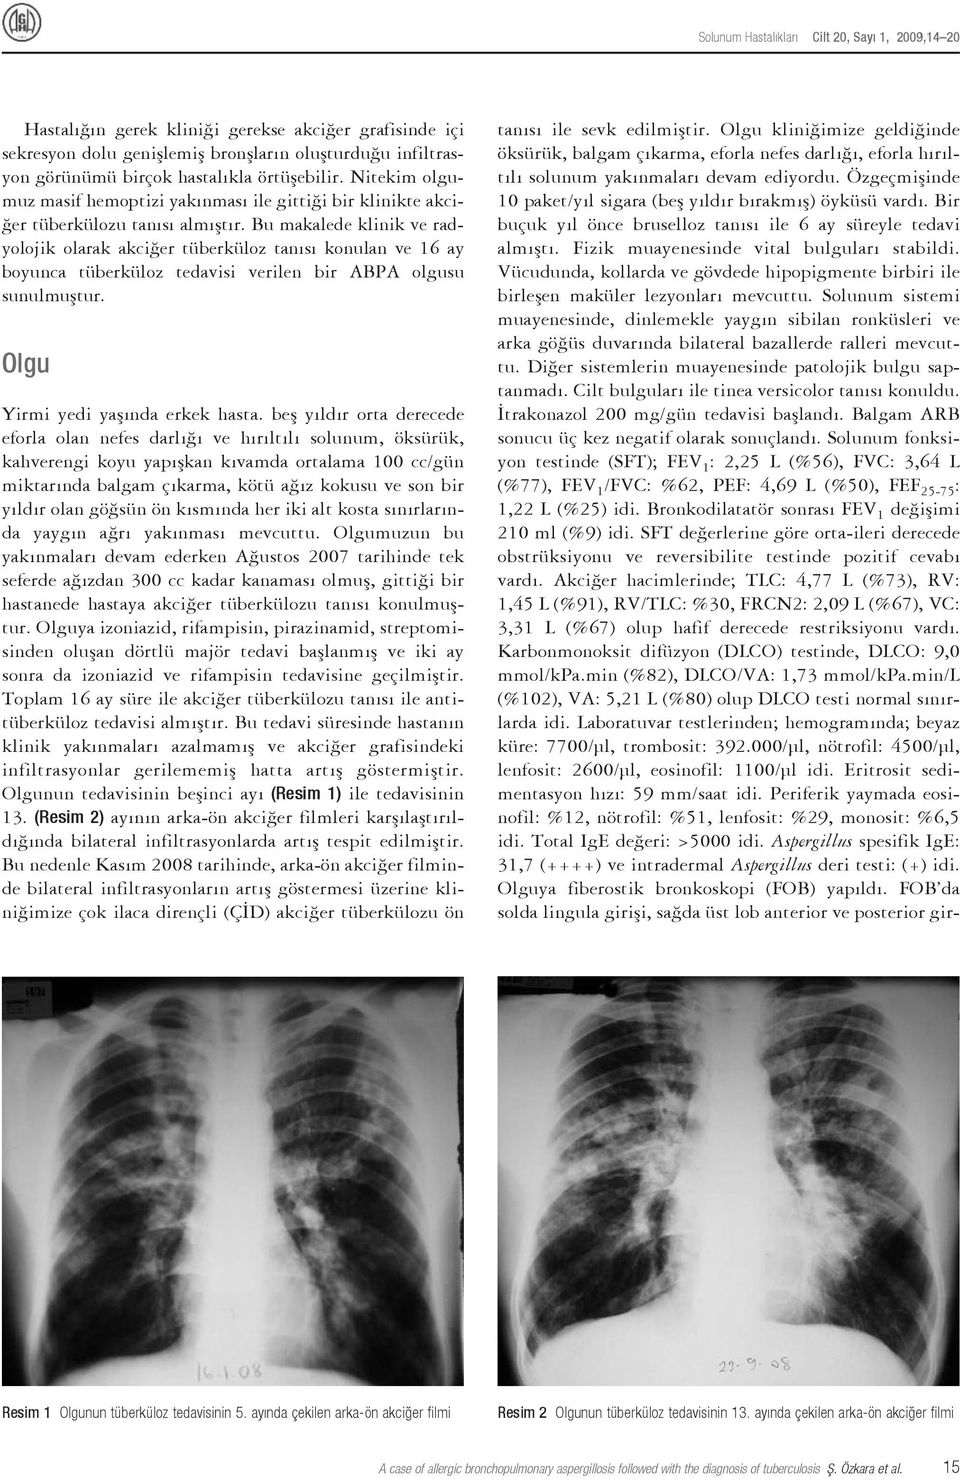 Bu makalede klinik ve radyolojik olarak akciğer tüberküloz tanısı konulan ve 16 ay boyunca tüberküloz tedavisi verilen bir ABPA olgusu sunulmuştur. Olgu Yirmi yedi yaşında erkek hasta.